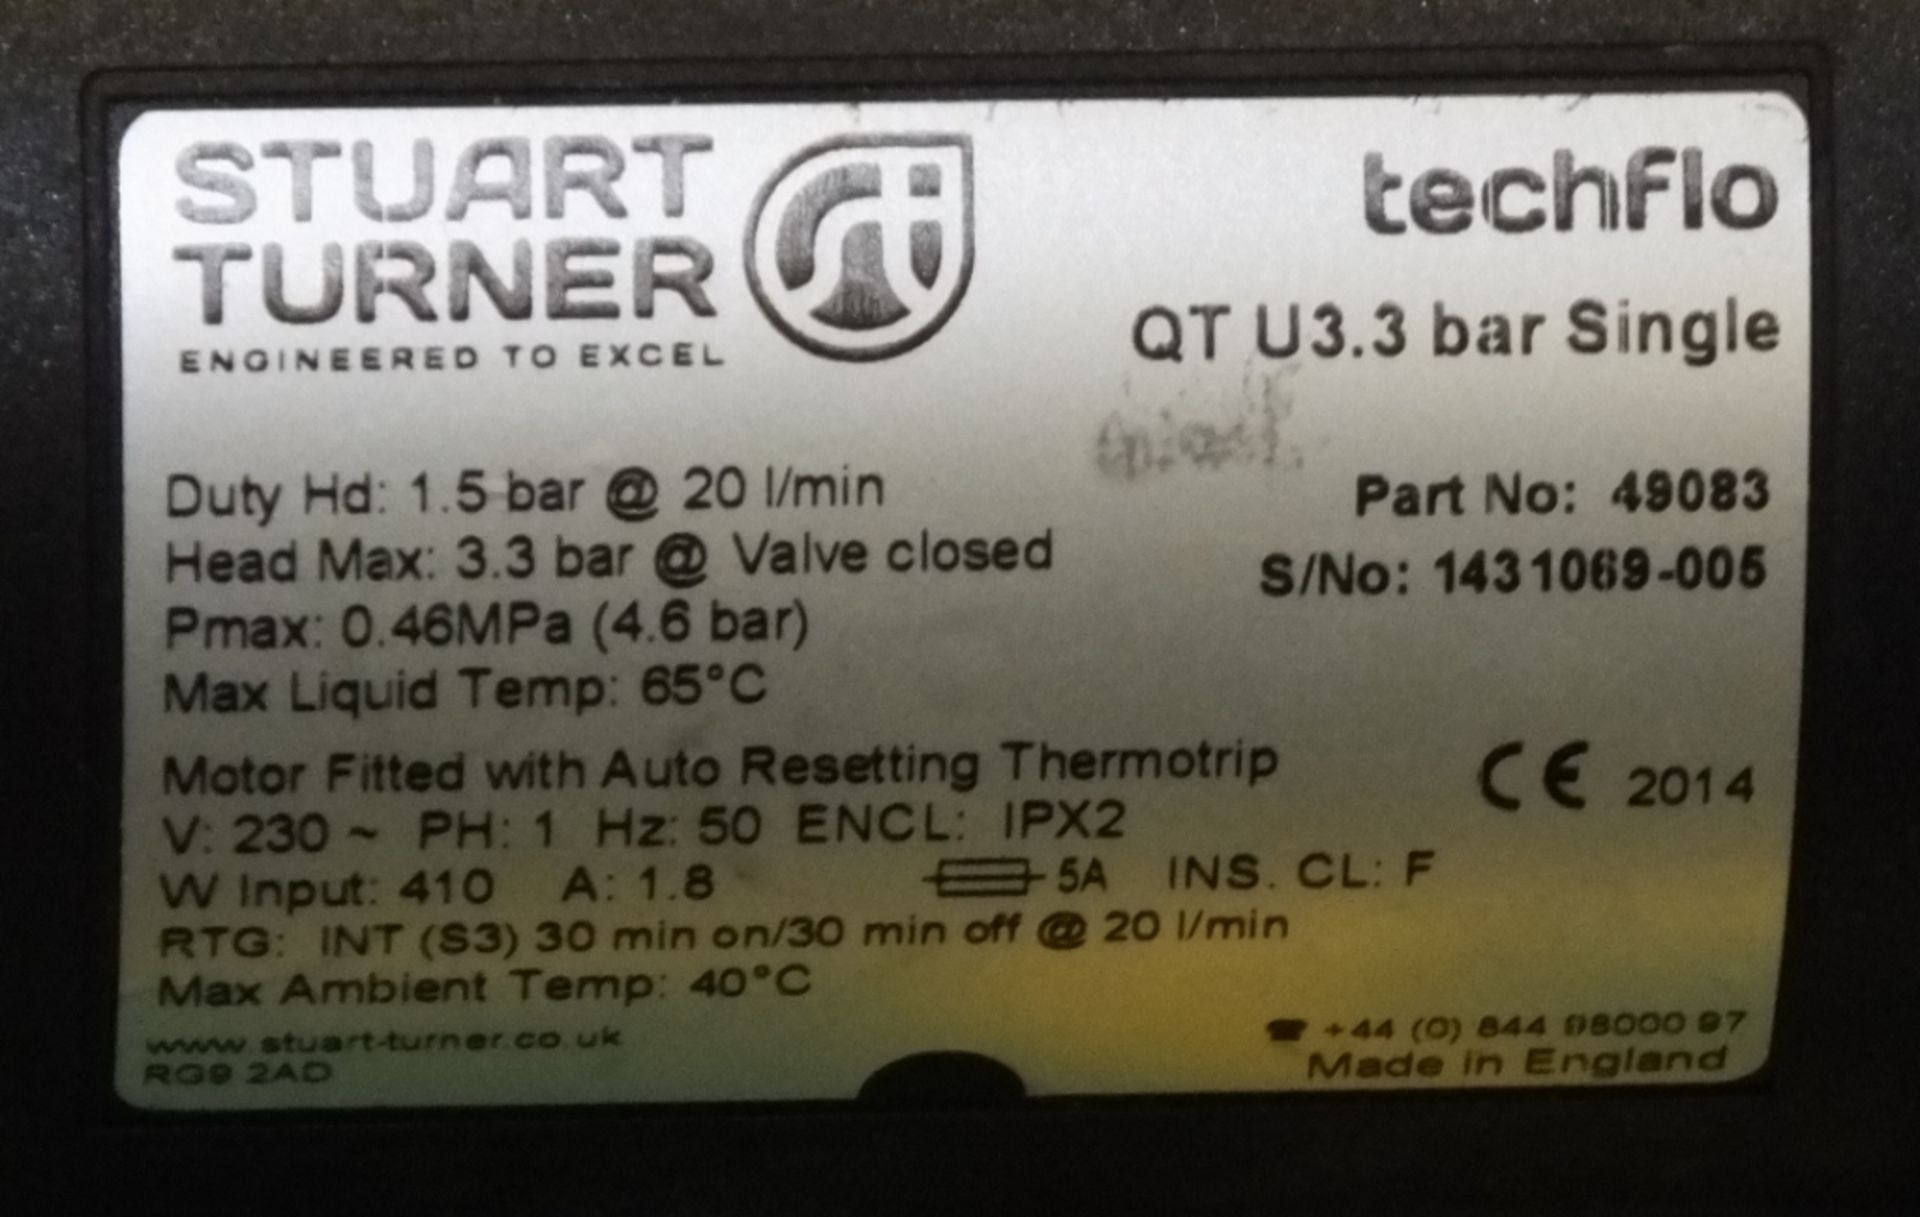 Stuart Turner Shower Pump - Techflo QT U3.3 bar Single - Image 2 of 2